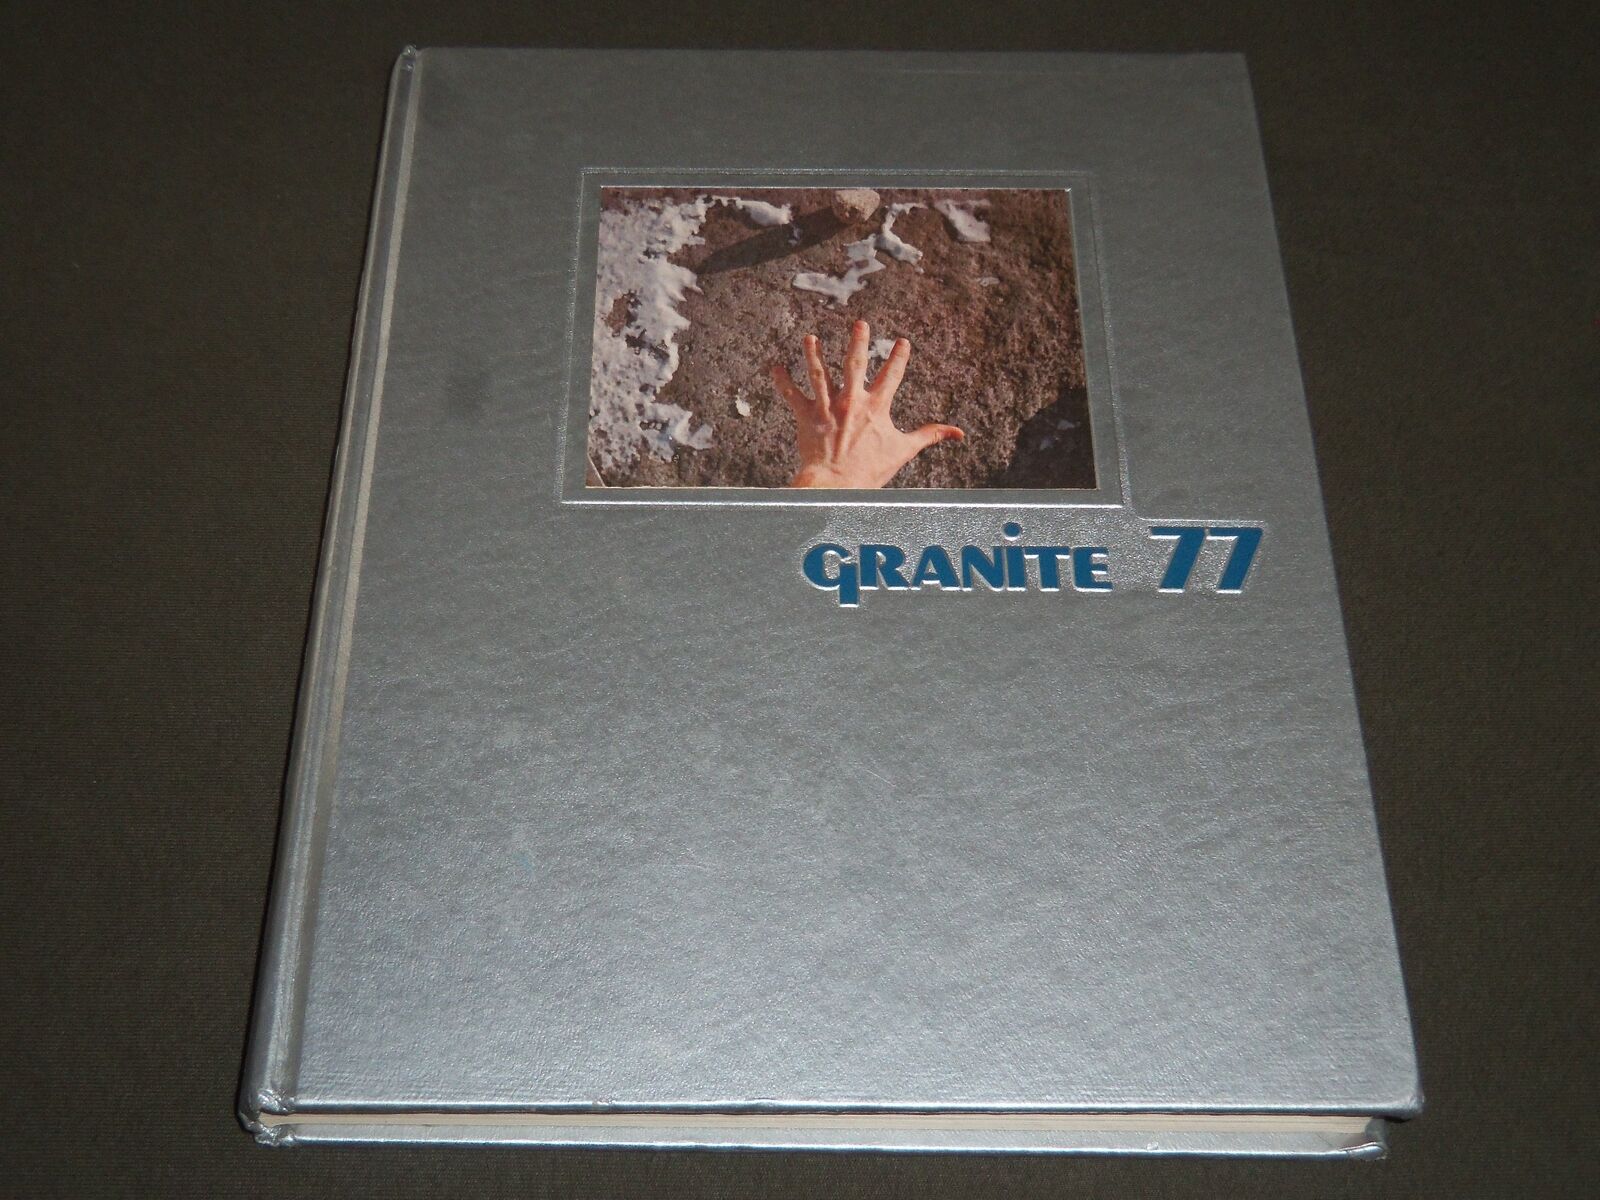 1977 GRANITE UNIVERSITY OF NEW HAMPSHIRE YEARBOOK - NICE PHOTOS - YB 1017